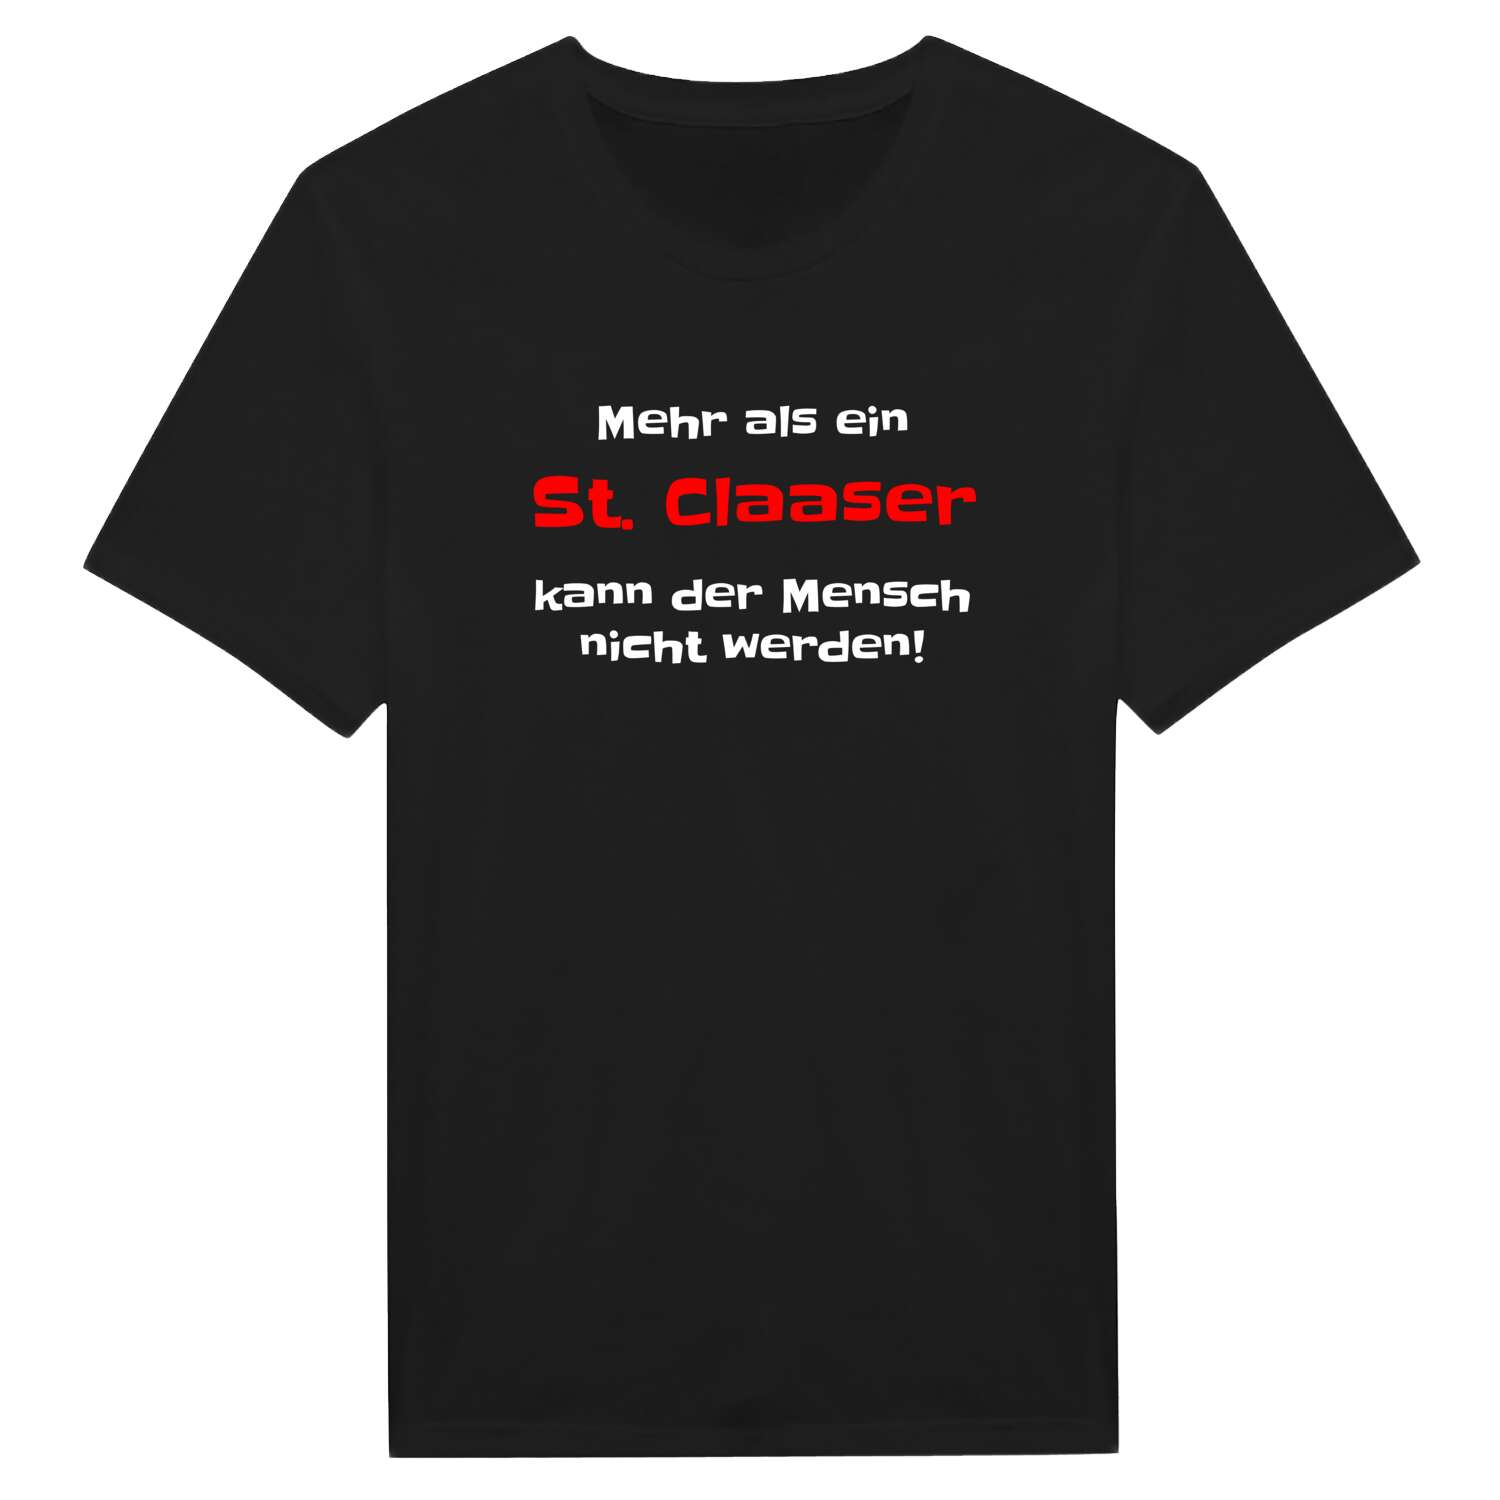 St. Claas T-Shirt »Mehr als ein«